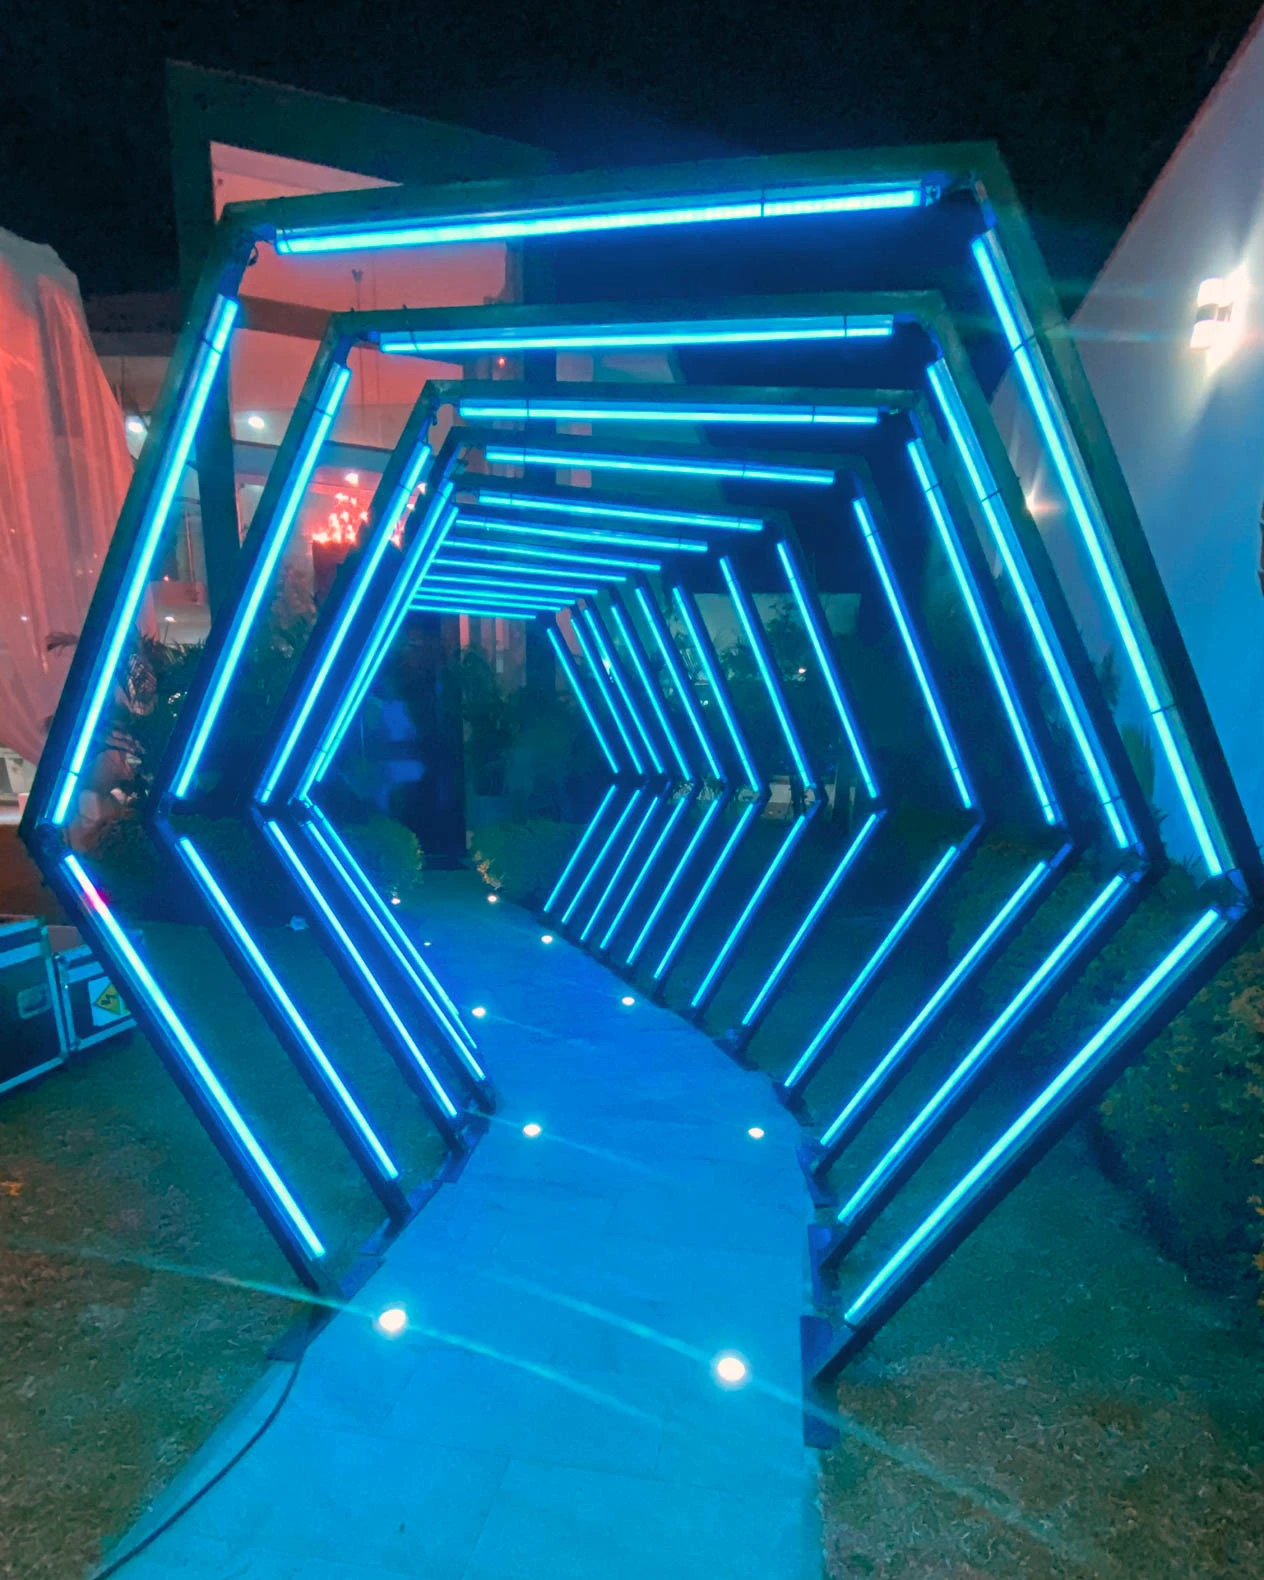 Túnel LED hexagonal verde: Elegante iluminación en el camino hacia una casa de eventos, creando una atmósfera única. - Túnel hexagonal led - scratch perú.